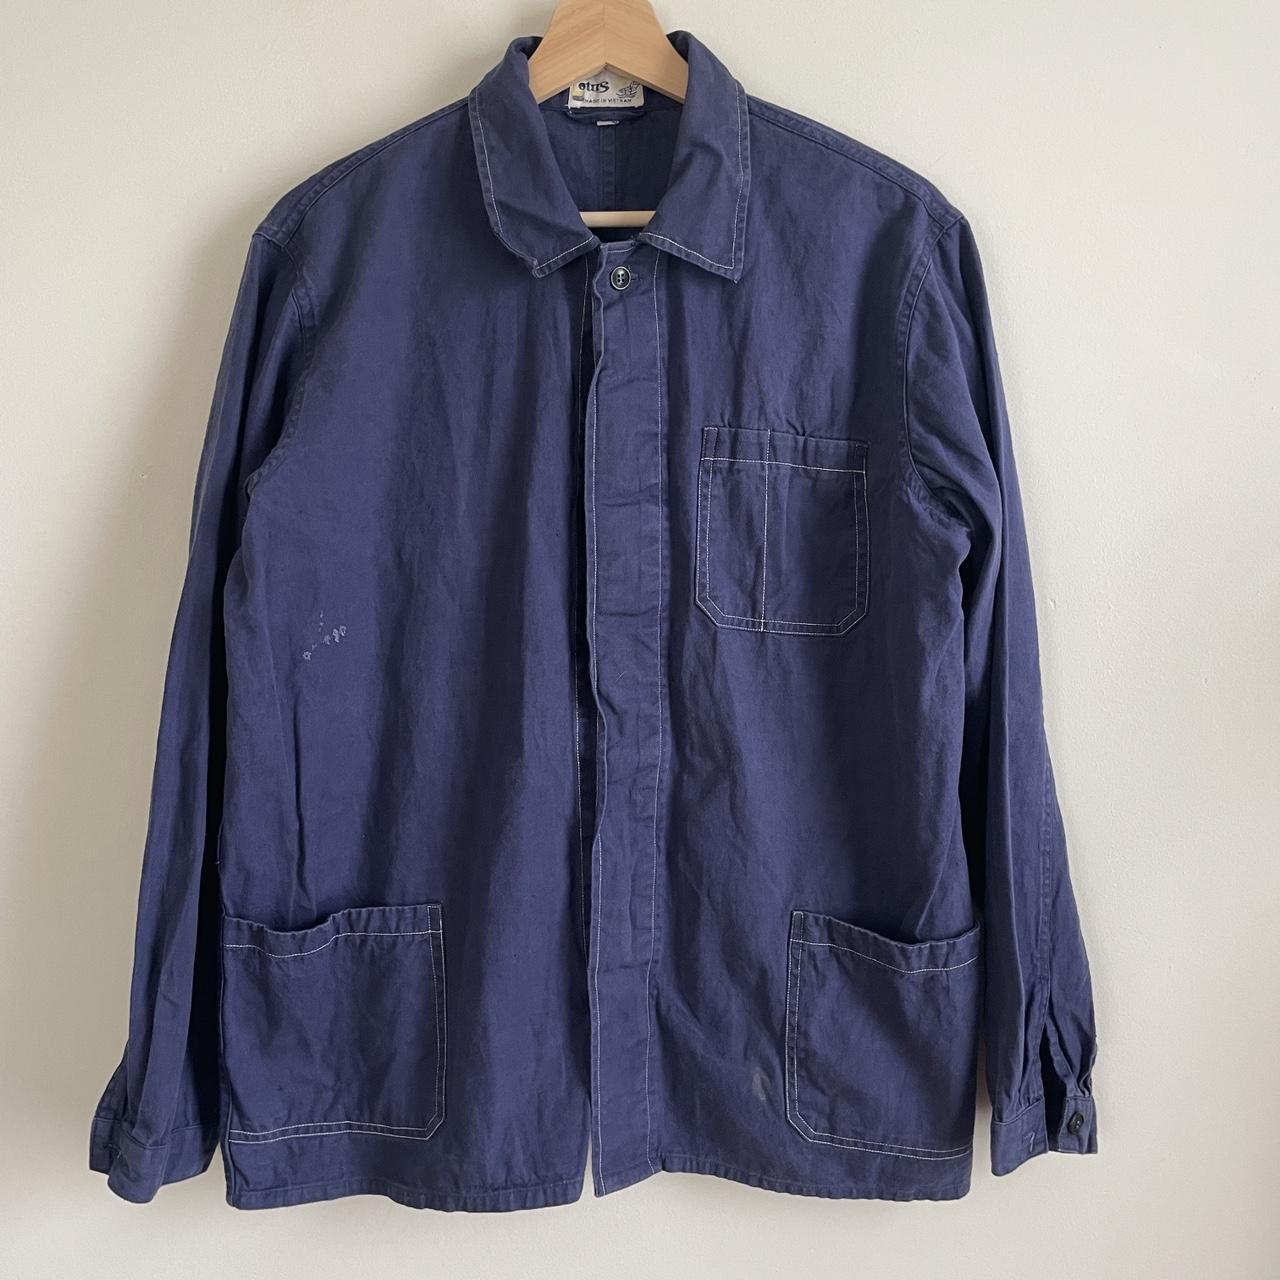 Vintage indigo blue French chore jacket (shirt like)... - Depop